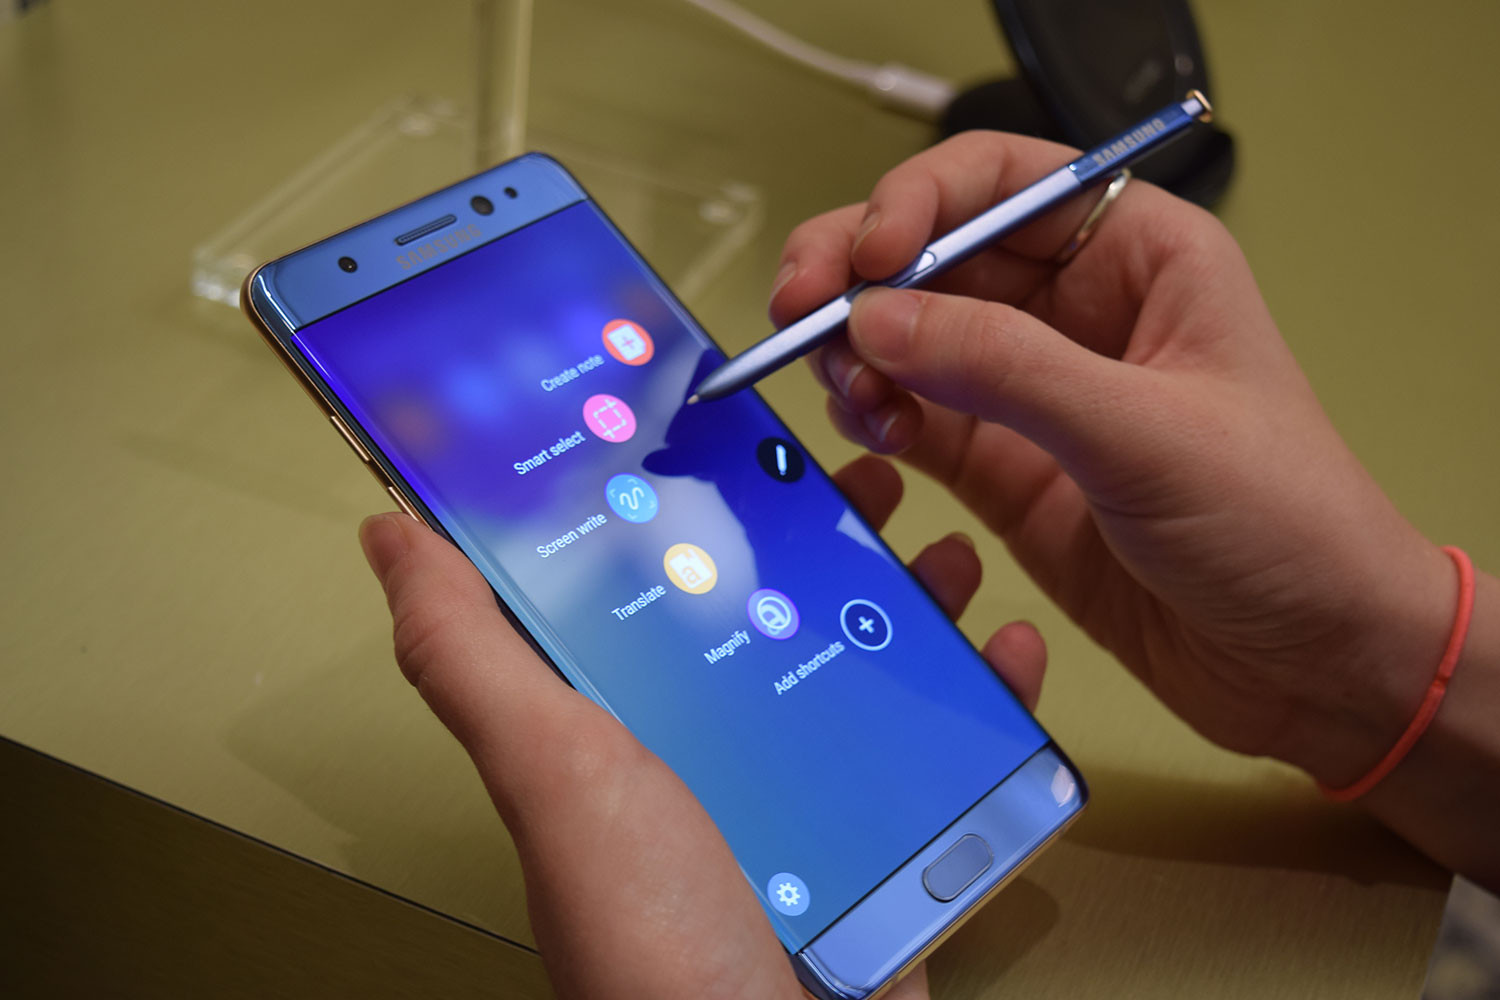 Samsung Türkiye: Galaxy Note 7 kullanmayı durdurun ve cihazları kapatın